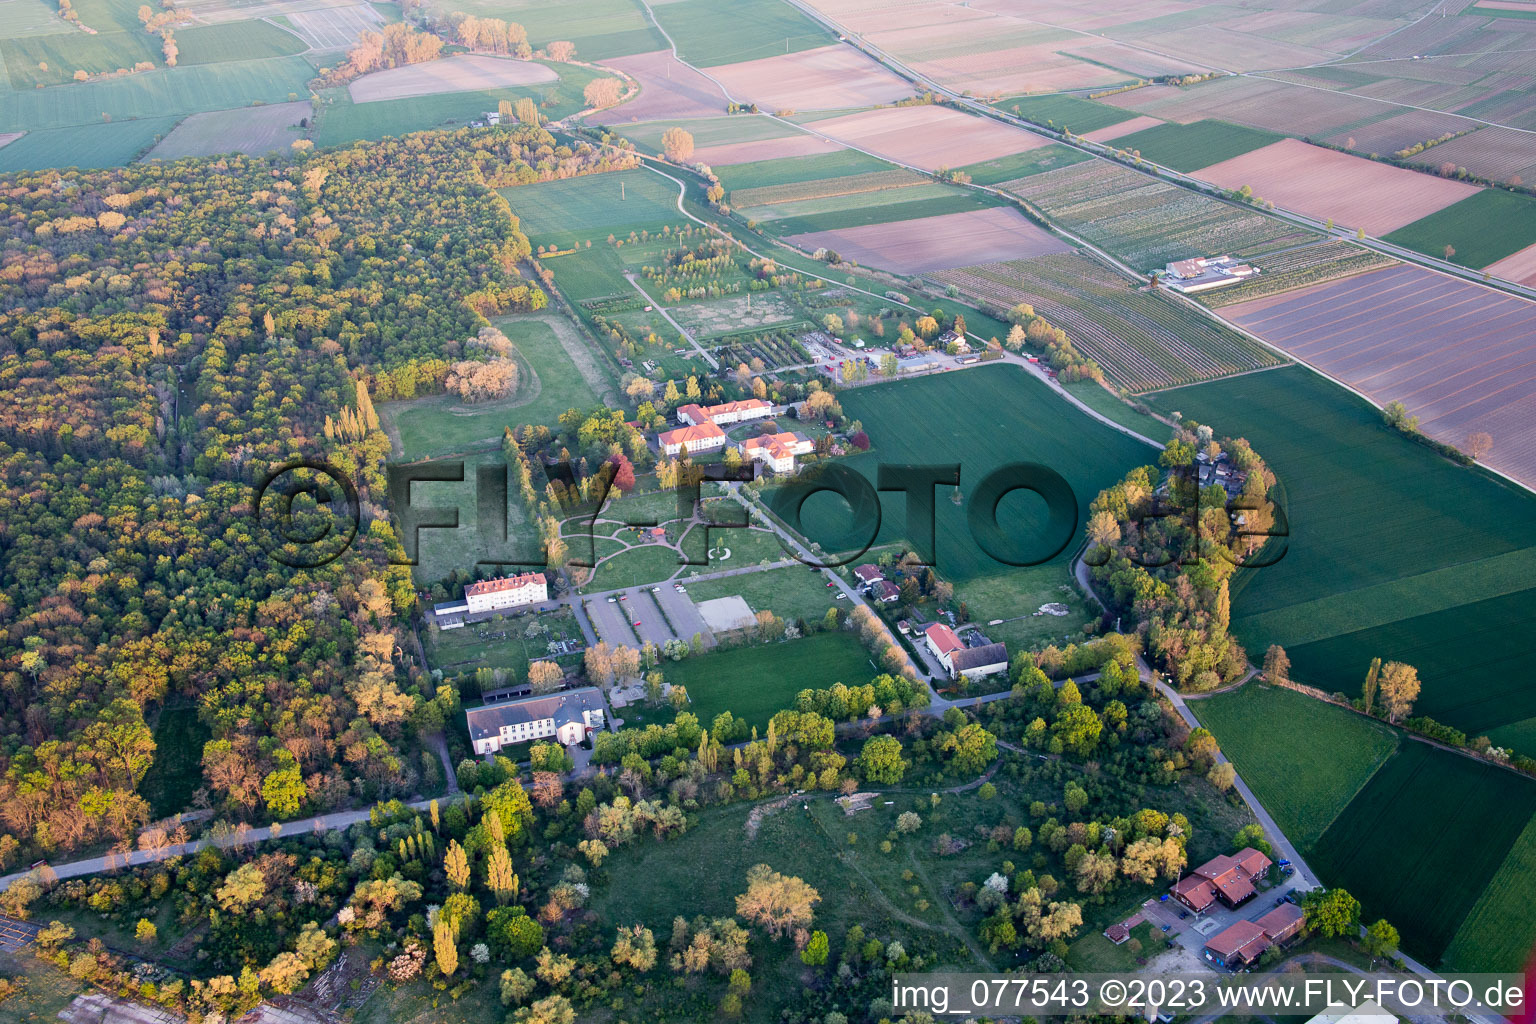 Luftbild von Campus Lachen Diakonissen im Ortsteil Speyerdorf in Neustadt an der Weinstraße im Bundesland Rheinland-Pfalz, Deutschland